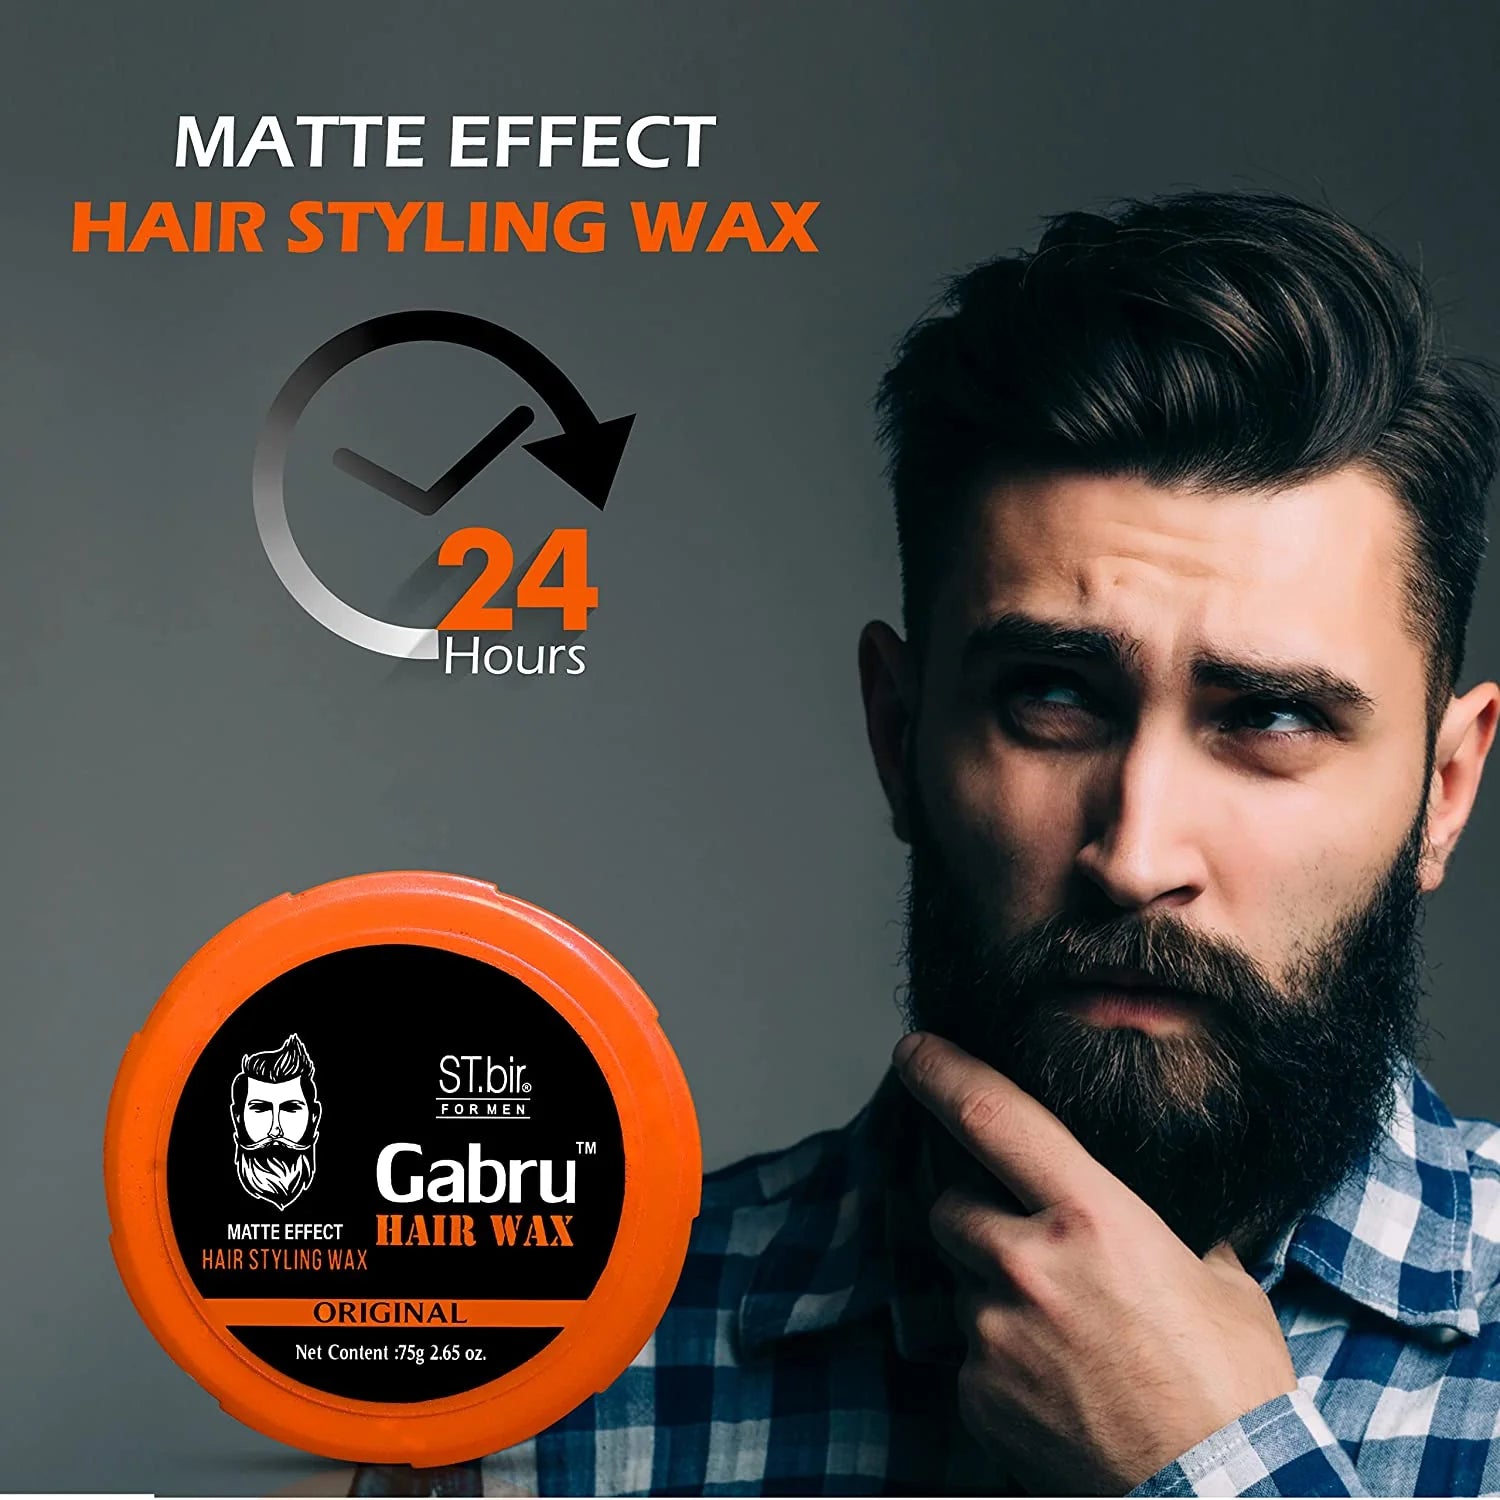 ST.bir Matte Effect Gabru Hair Wax 75gm (Pack of 4)